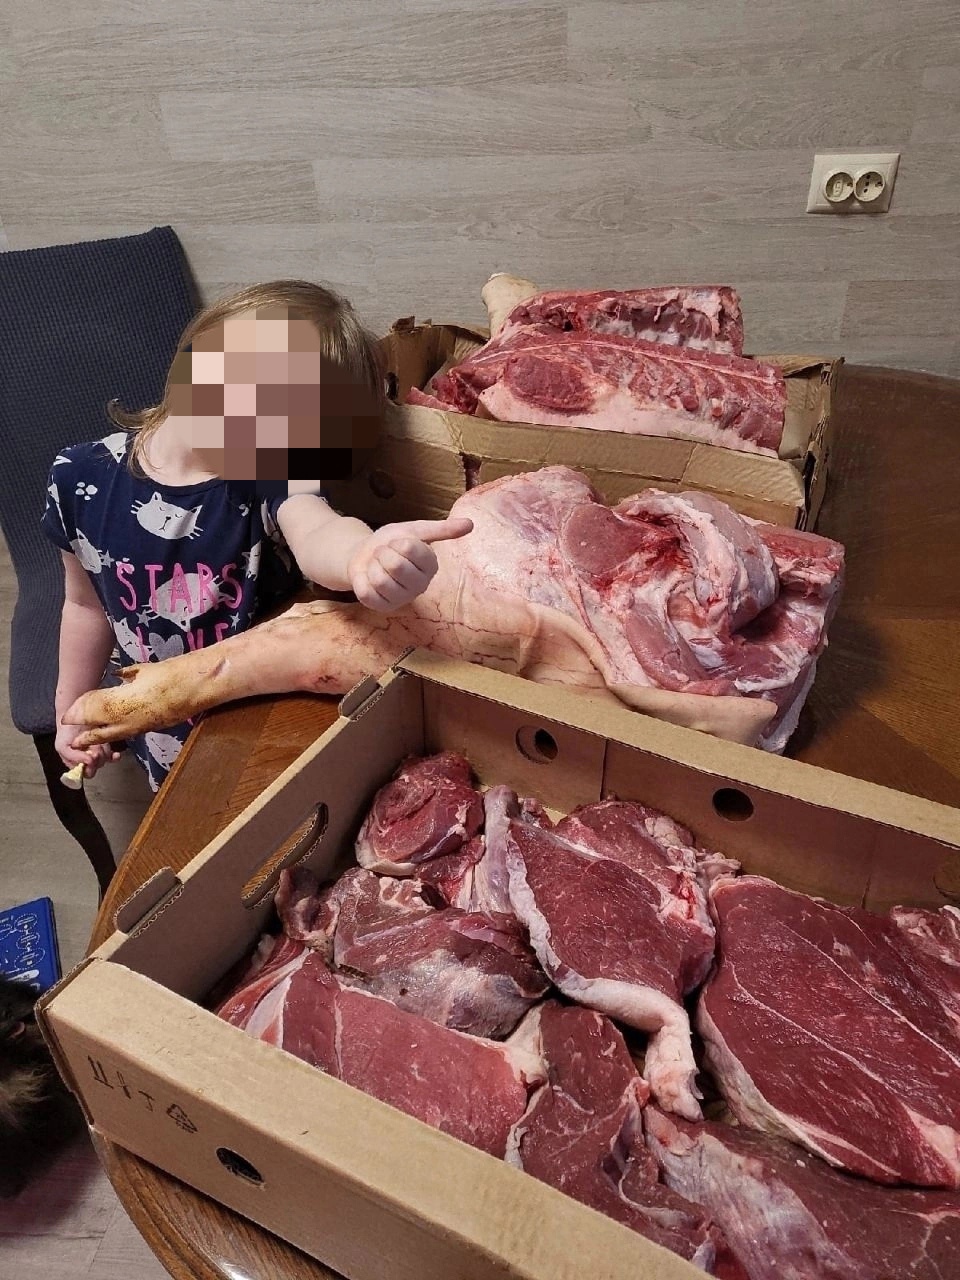 Ради рекламы маленькую девочку сфотографировали с четвертью свиной туши